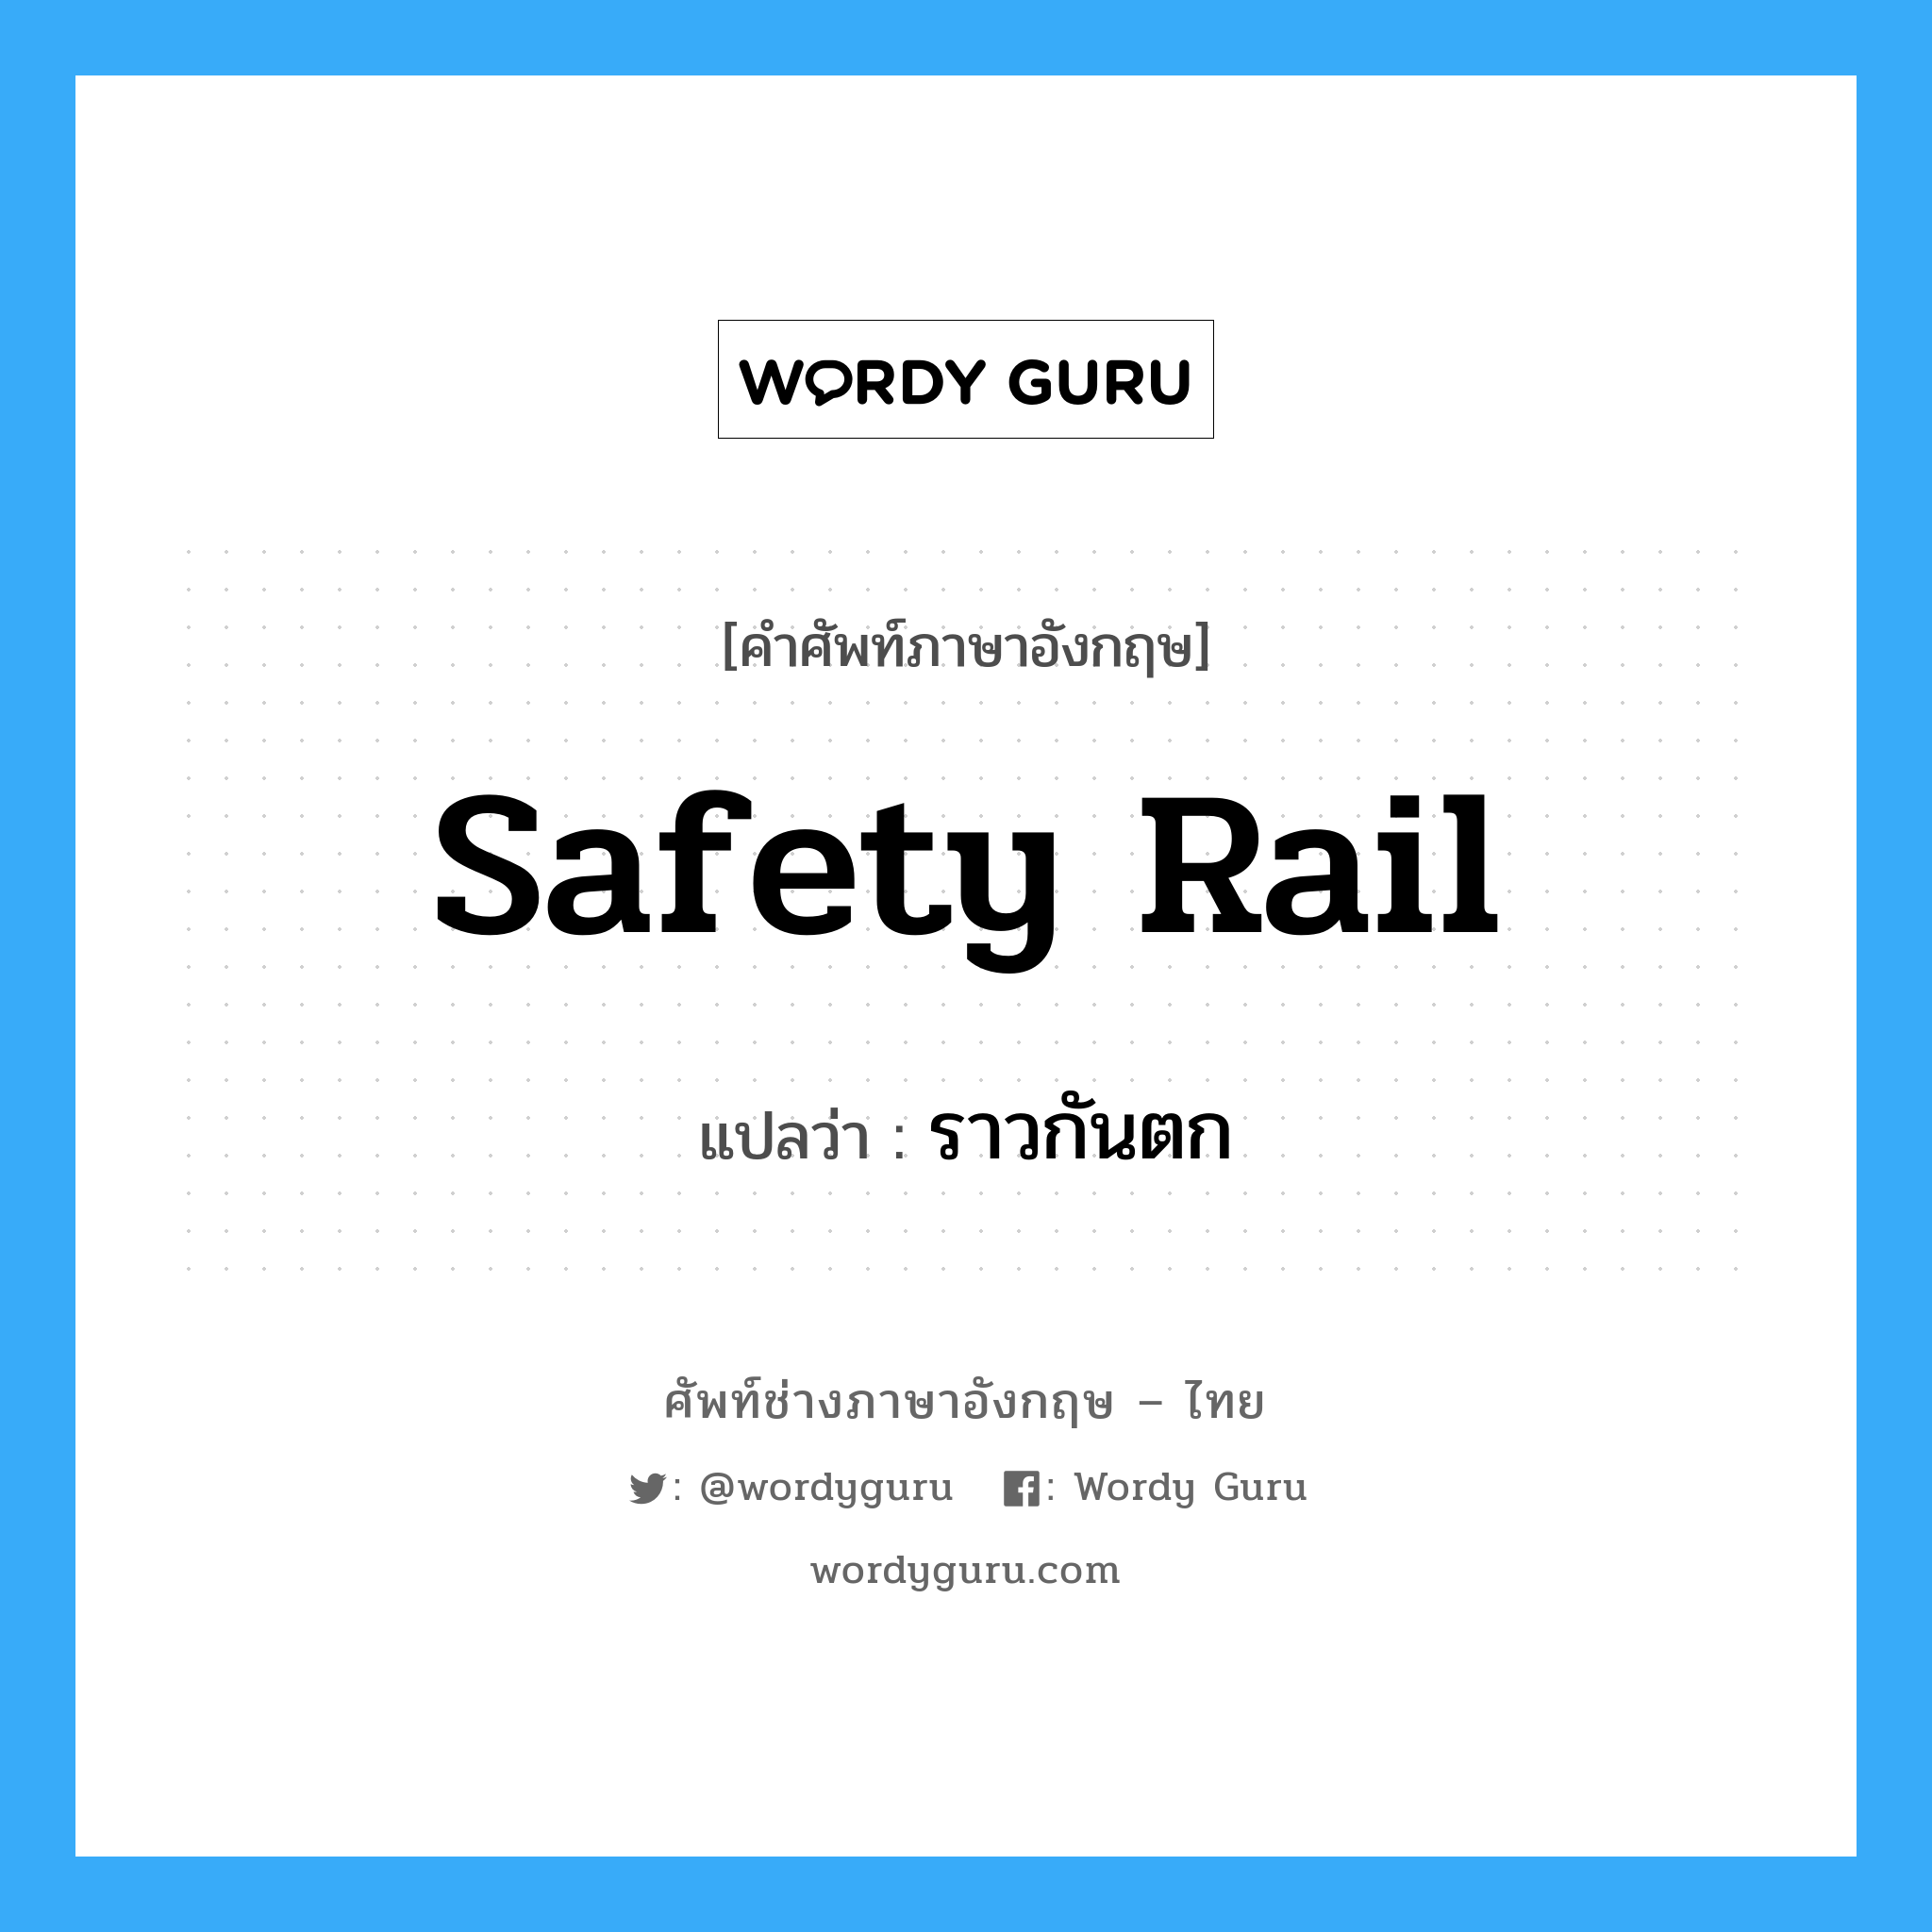 ราวกันตก ภาษาอังกฤษ?, คำศัพท์ช่างภาษาอังกฤษ - ไทย ราวกันตก คำศัพท์ภาษาอังกฤษ ราวกันตก แปลว่า safety rail